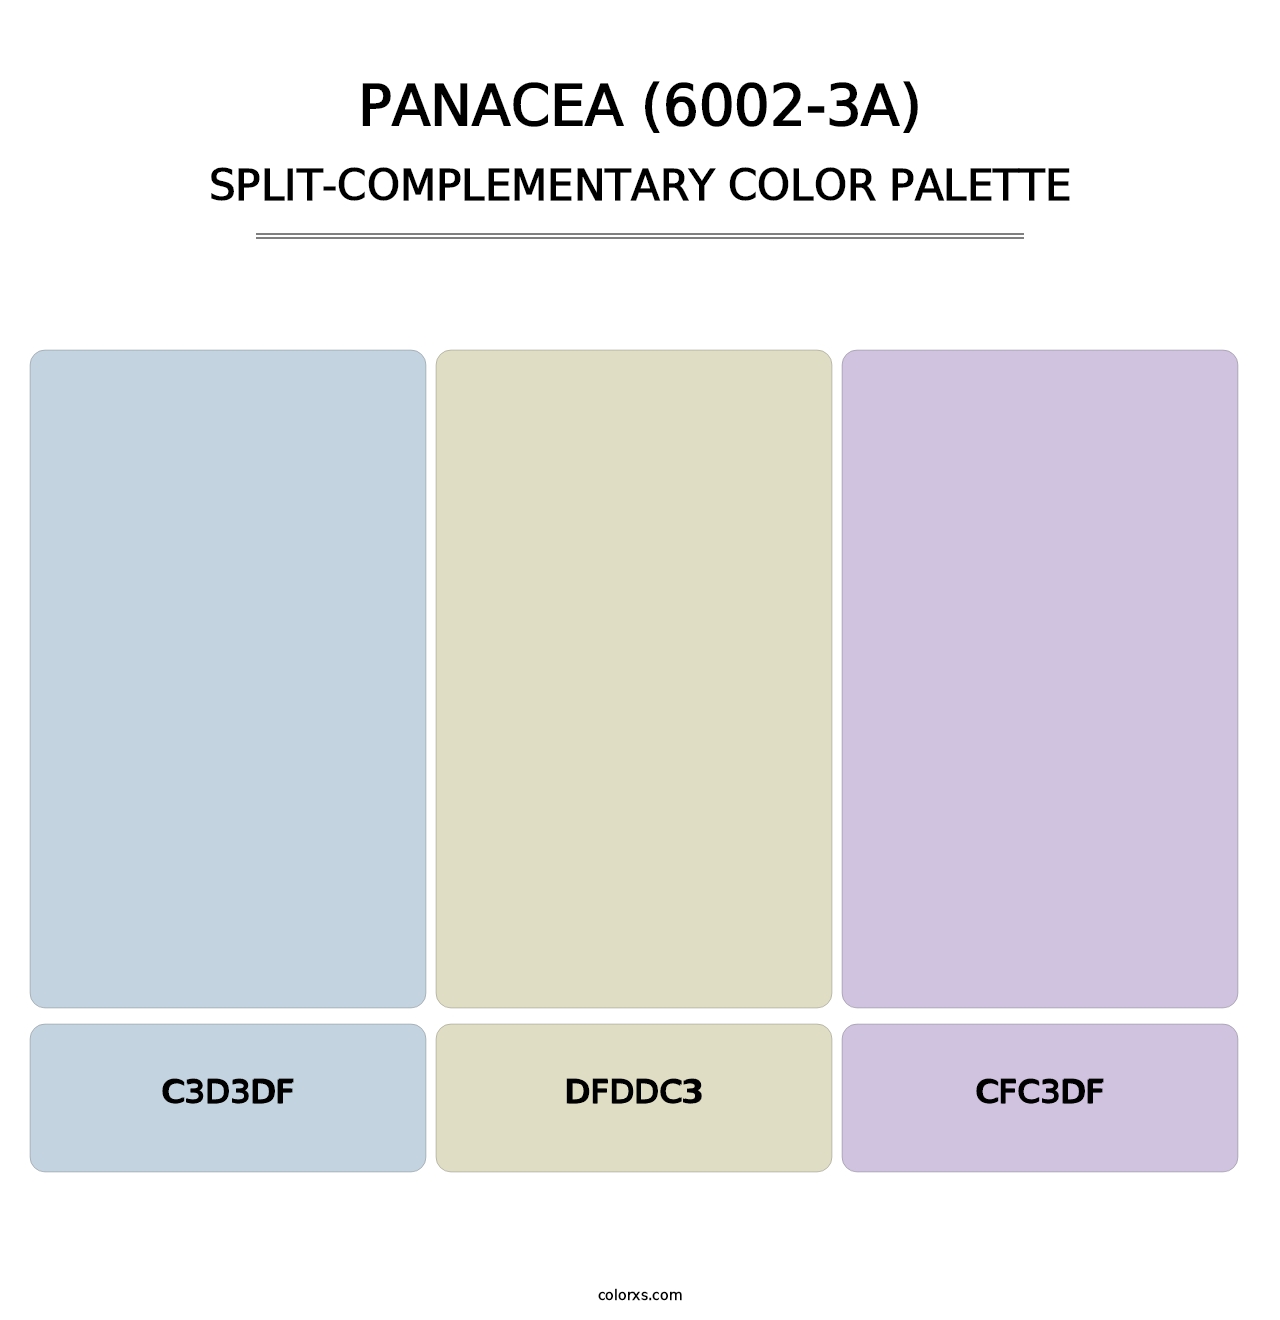 Panacea (6002-3A) - Split-Complementary Color Palette